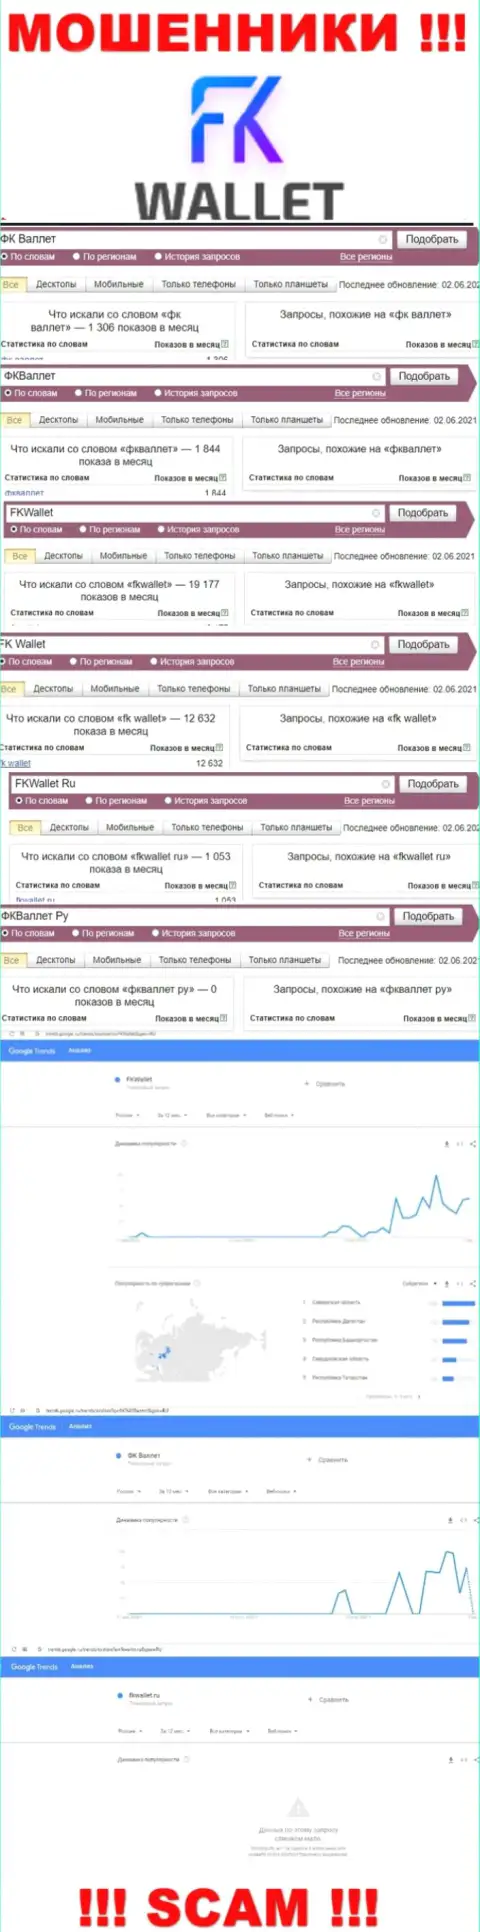 Скриншот результата online-запросов по противоправно действующей конторе ФК Валлет